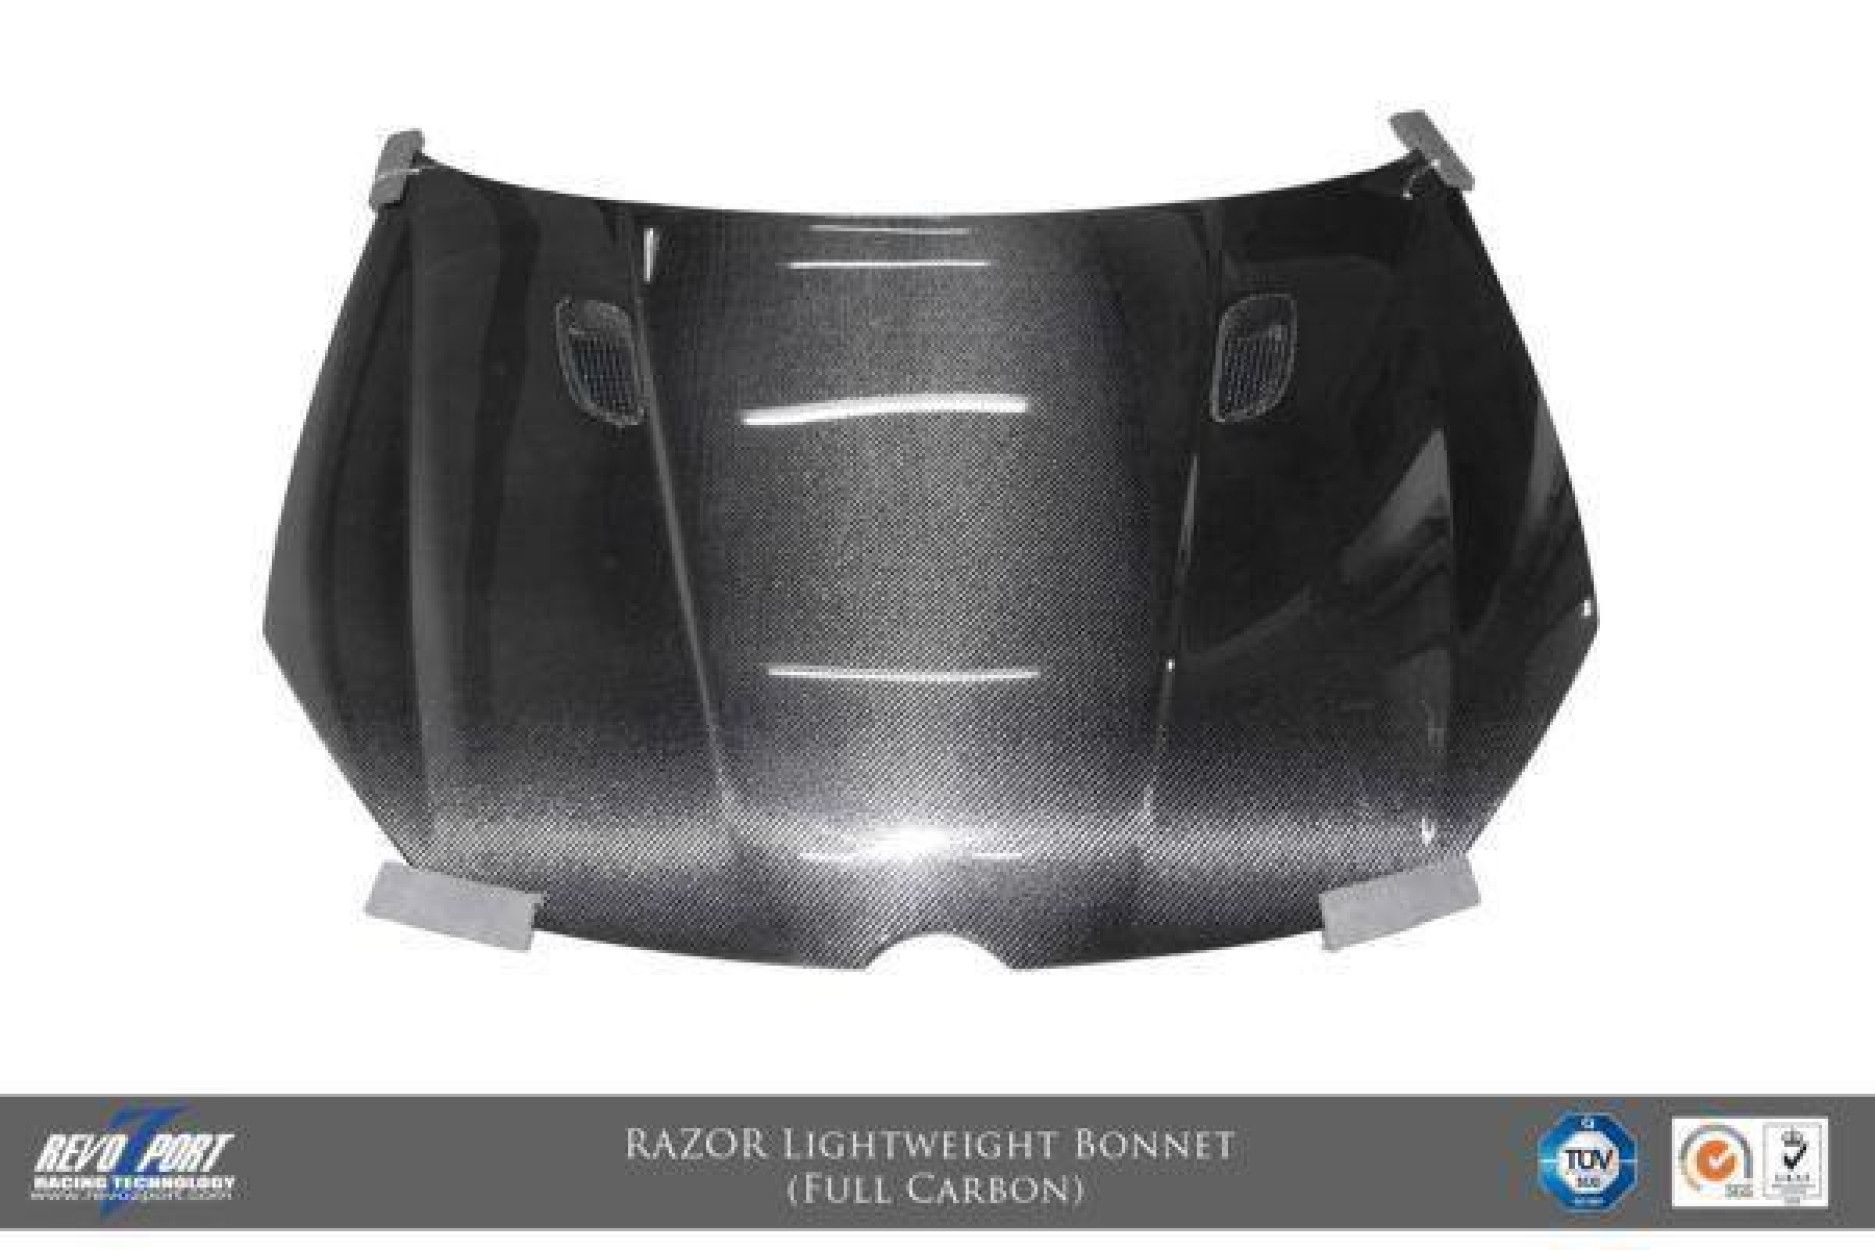 RevoZport Carbon hood for Volkswagen Golf MK6|Golf 6 R "Razor" with vents